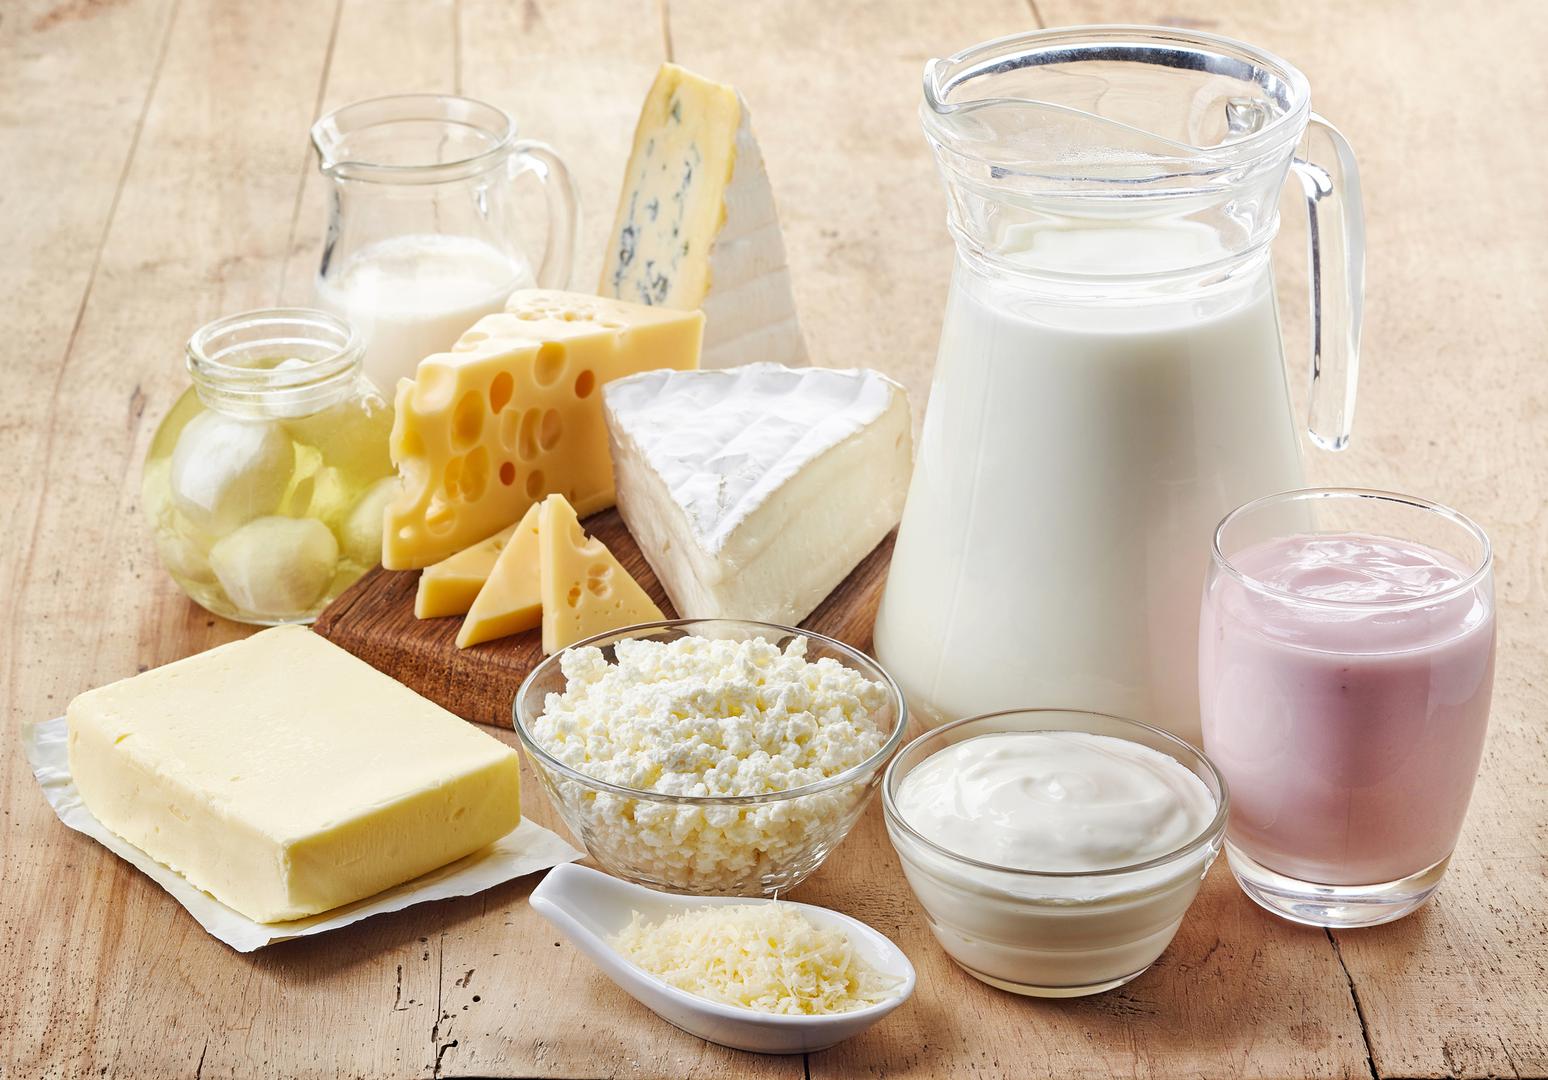 Mliječni proizvodi s niskom masnoćom - Mlijeko, sir i jogurt mogu pomoći u smanjenju krvnog tlaka. Mliječni proizvodi mogu sadržavati veliku količinu zasićenih masnoća, stoga svakako odaberite mliječne proizvode s niskim udjelom masnoće. 